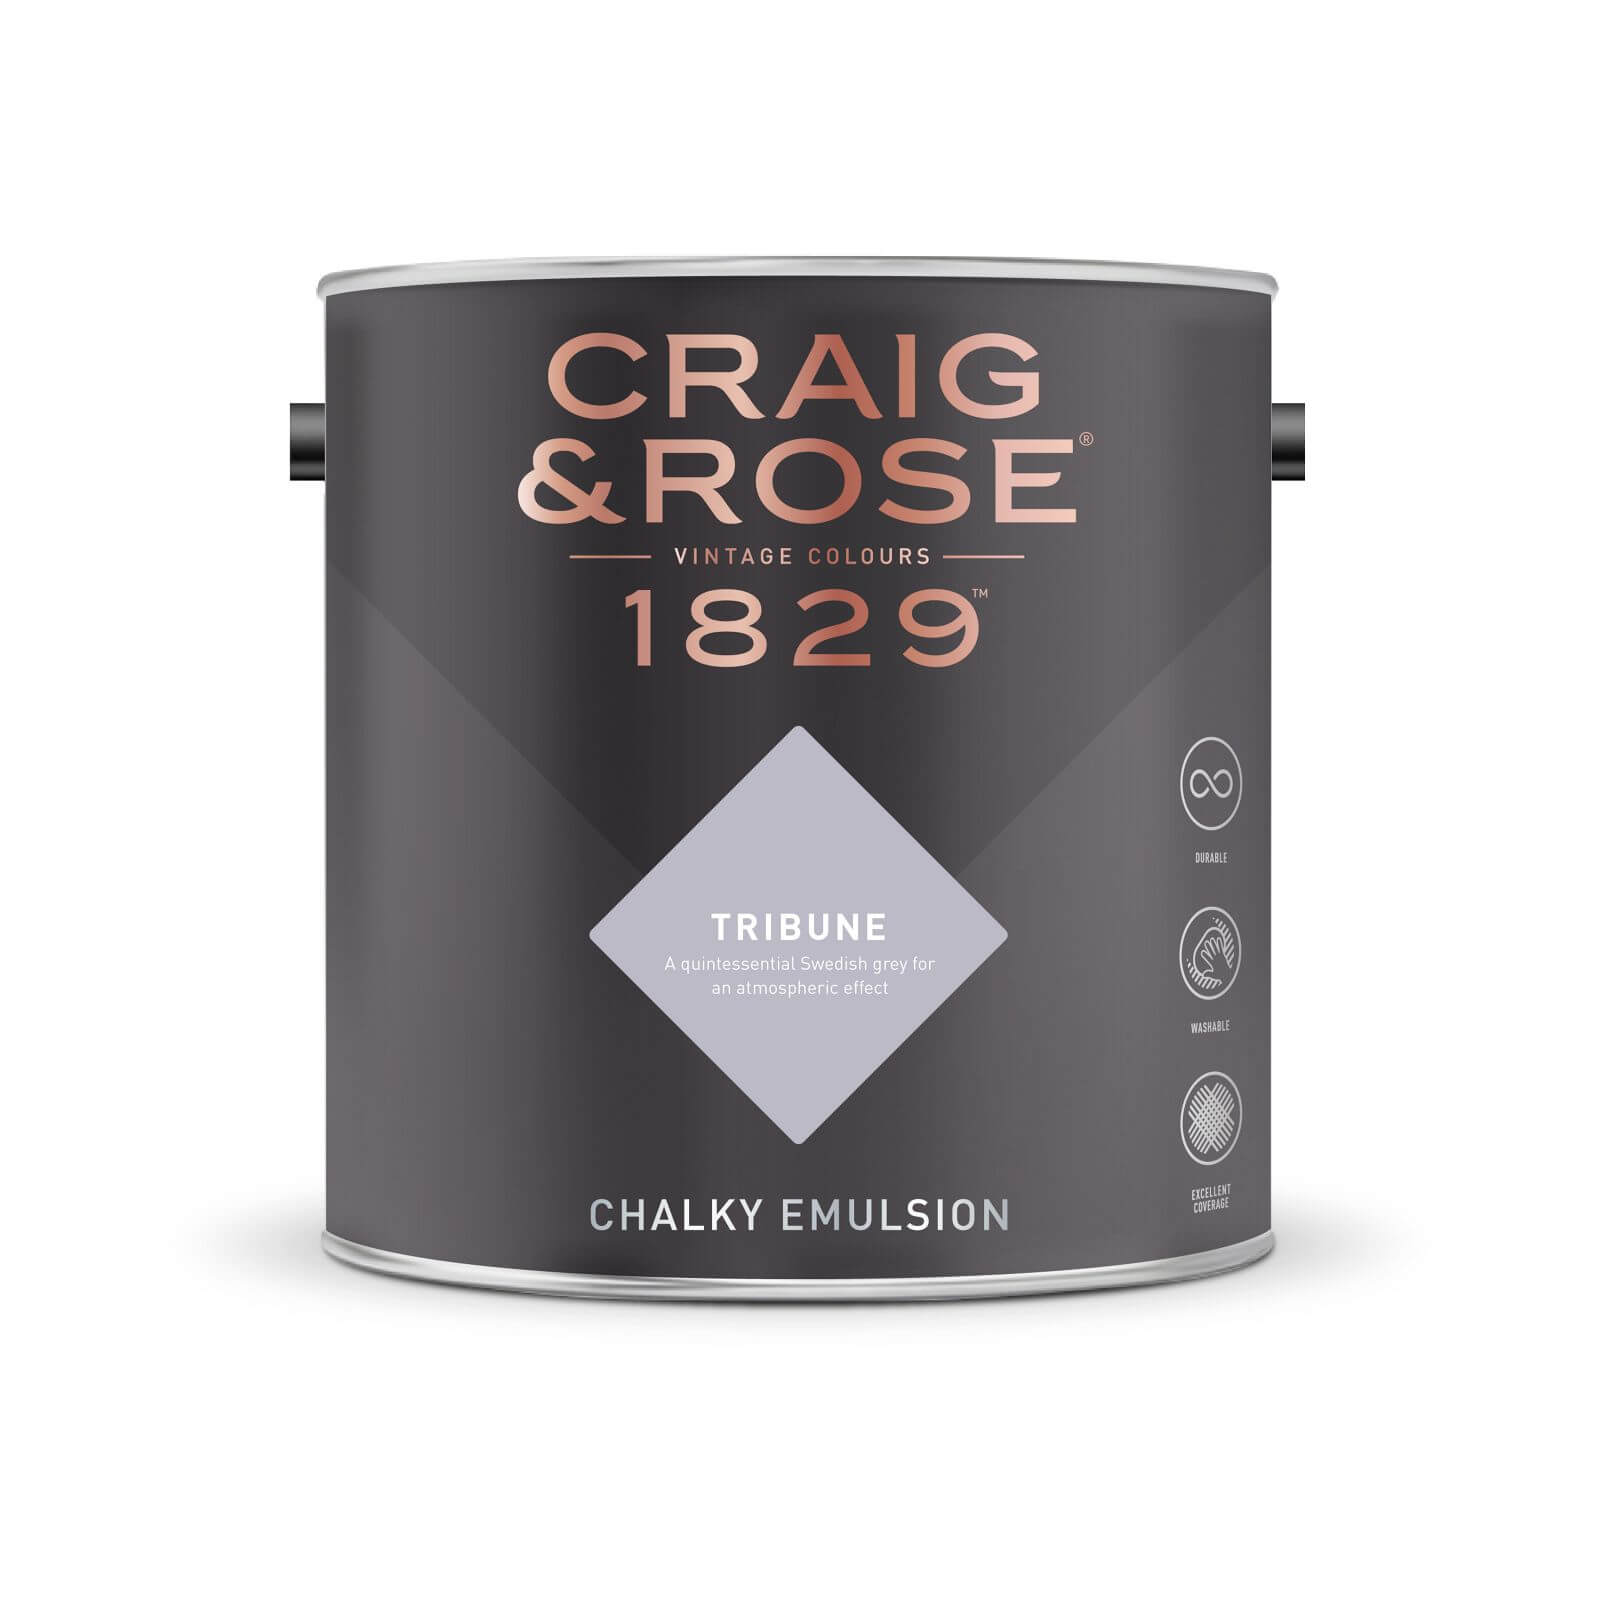 Craig & Rose 1829 Chalky Emulsion Paint Tribune - 5L